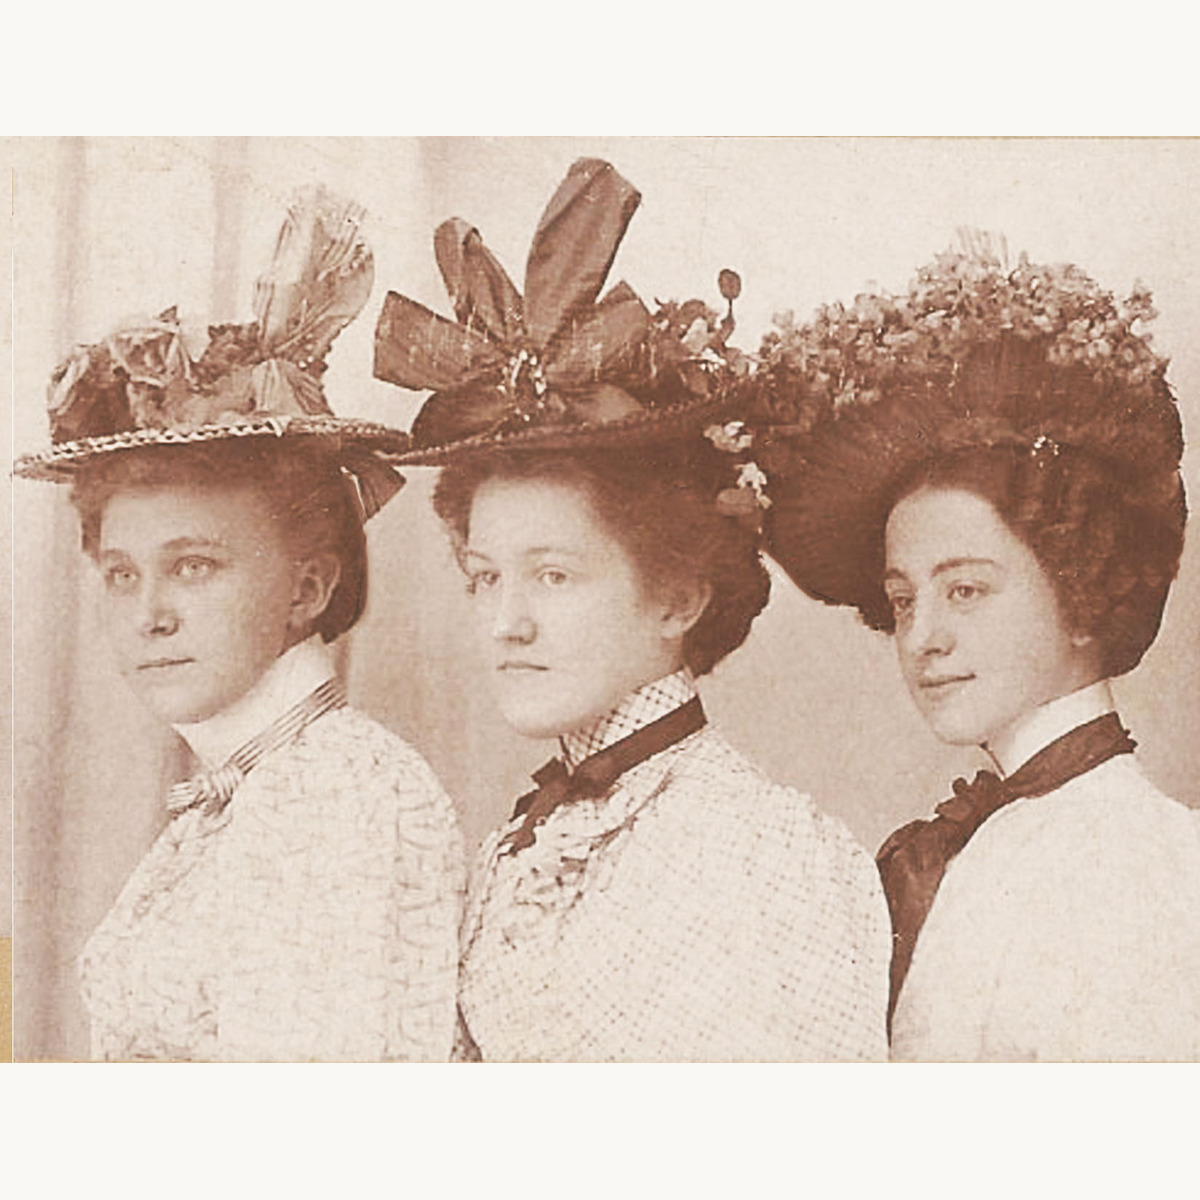 Victorian ladies in hats